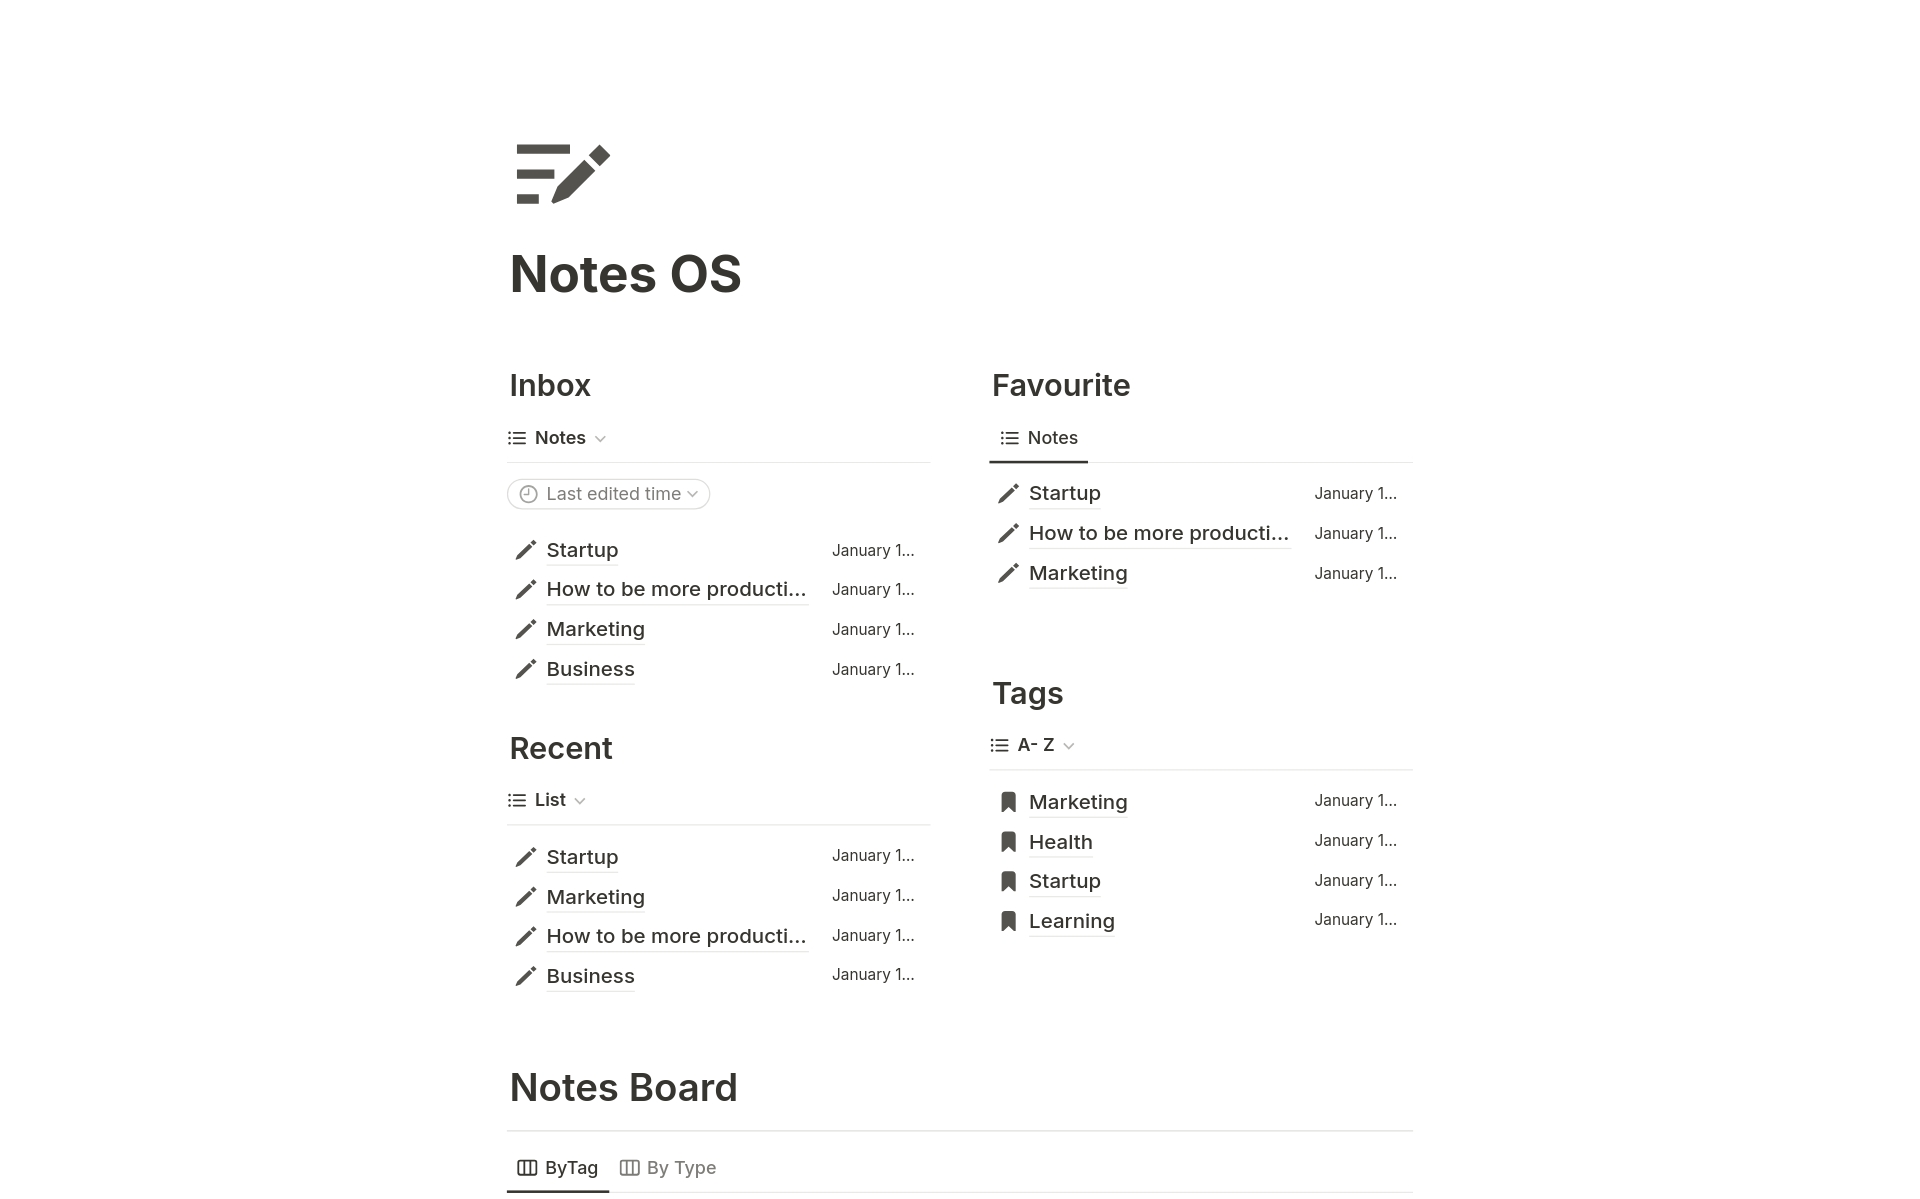 Uma prévia do modelo para Ultimate Notes OS 